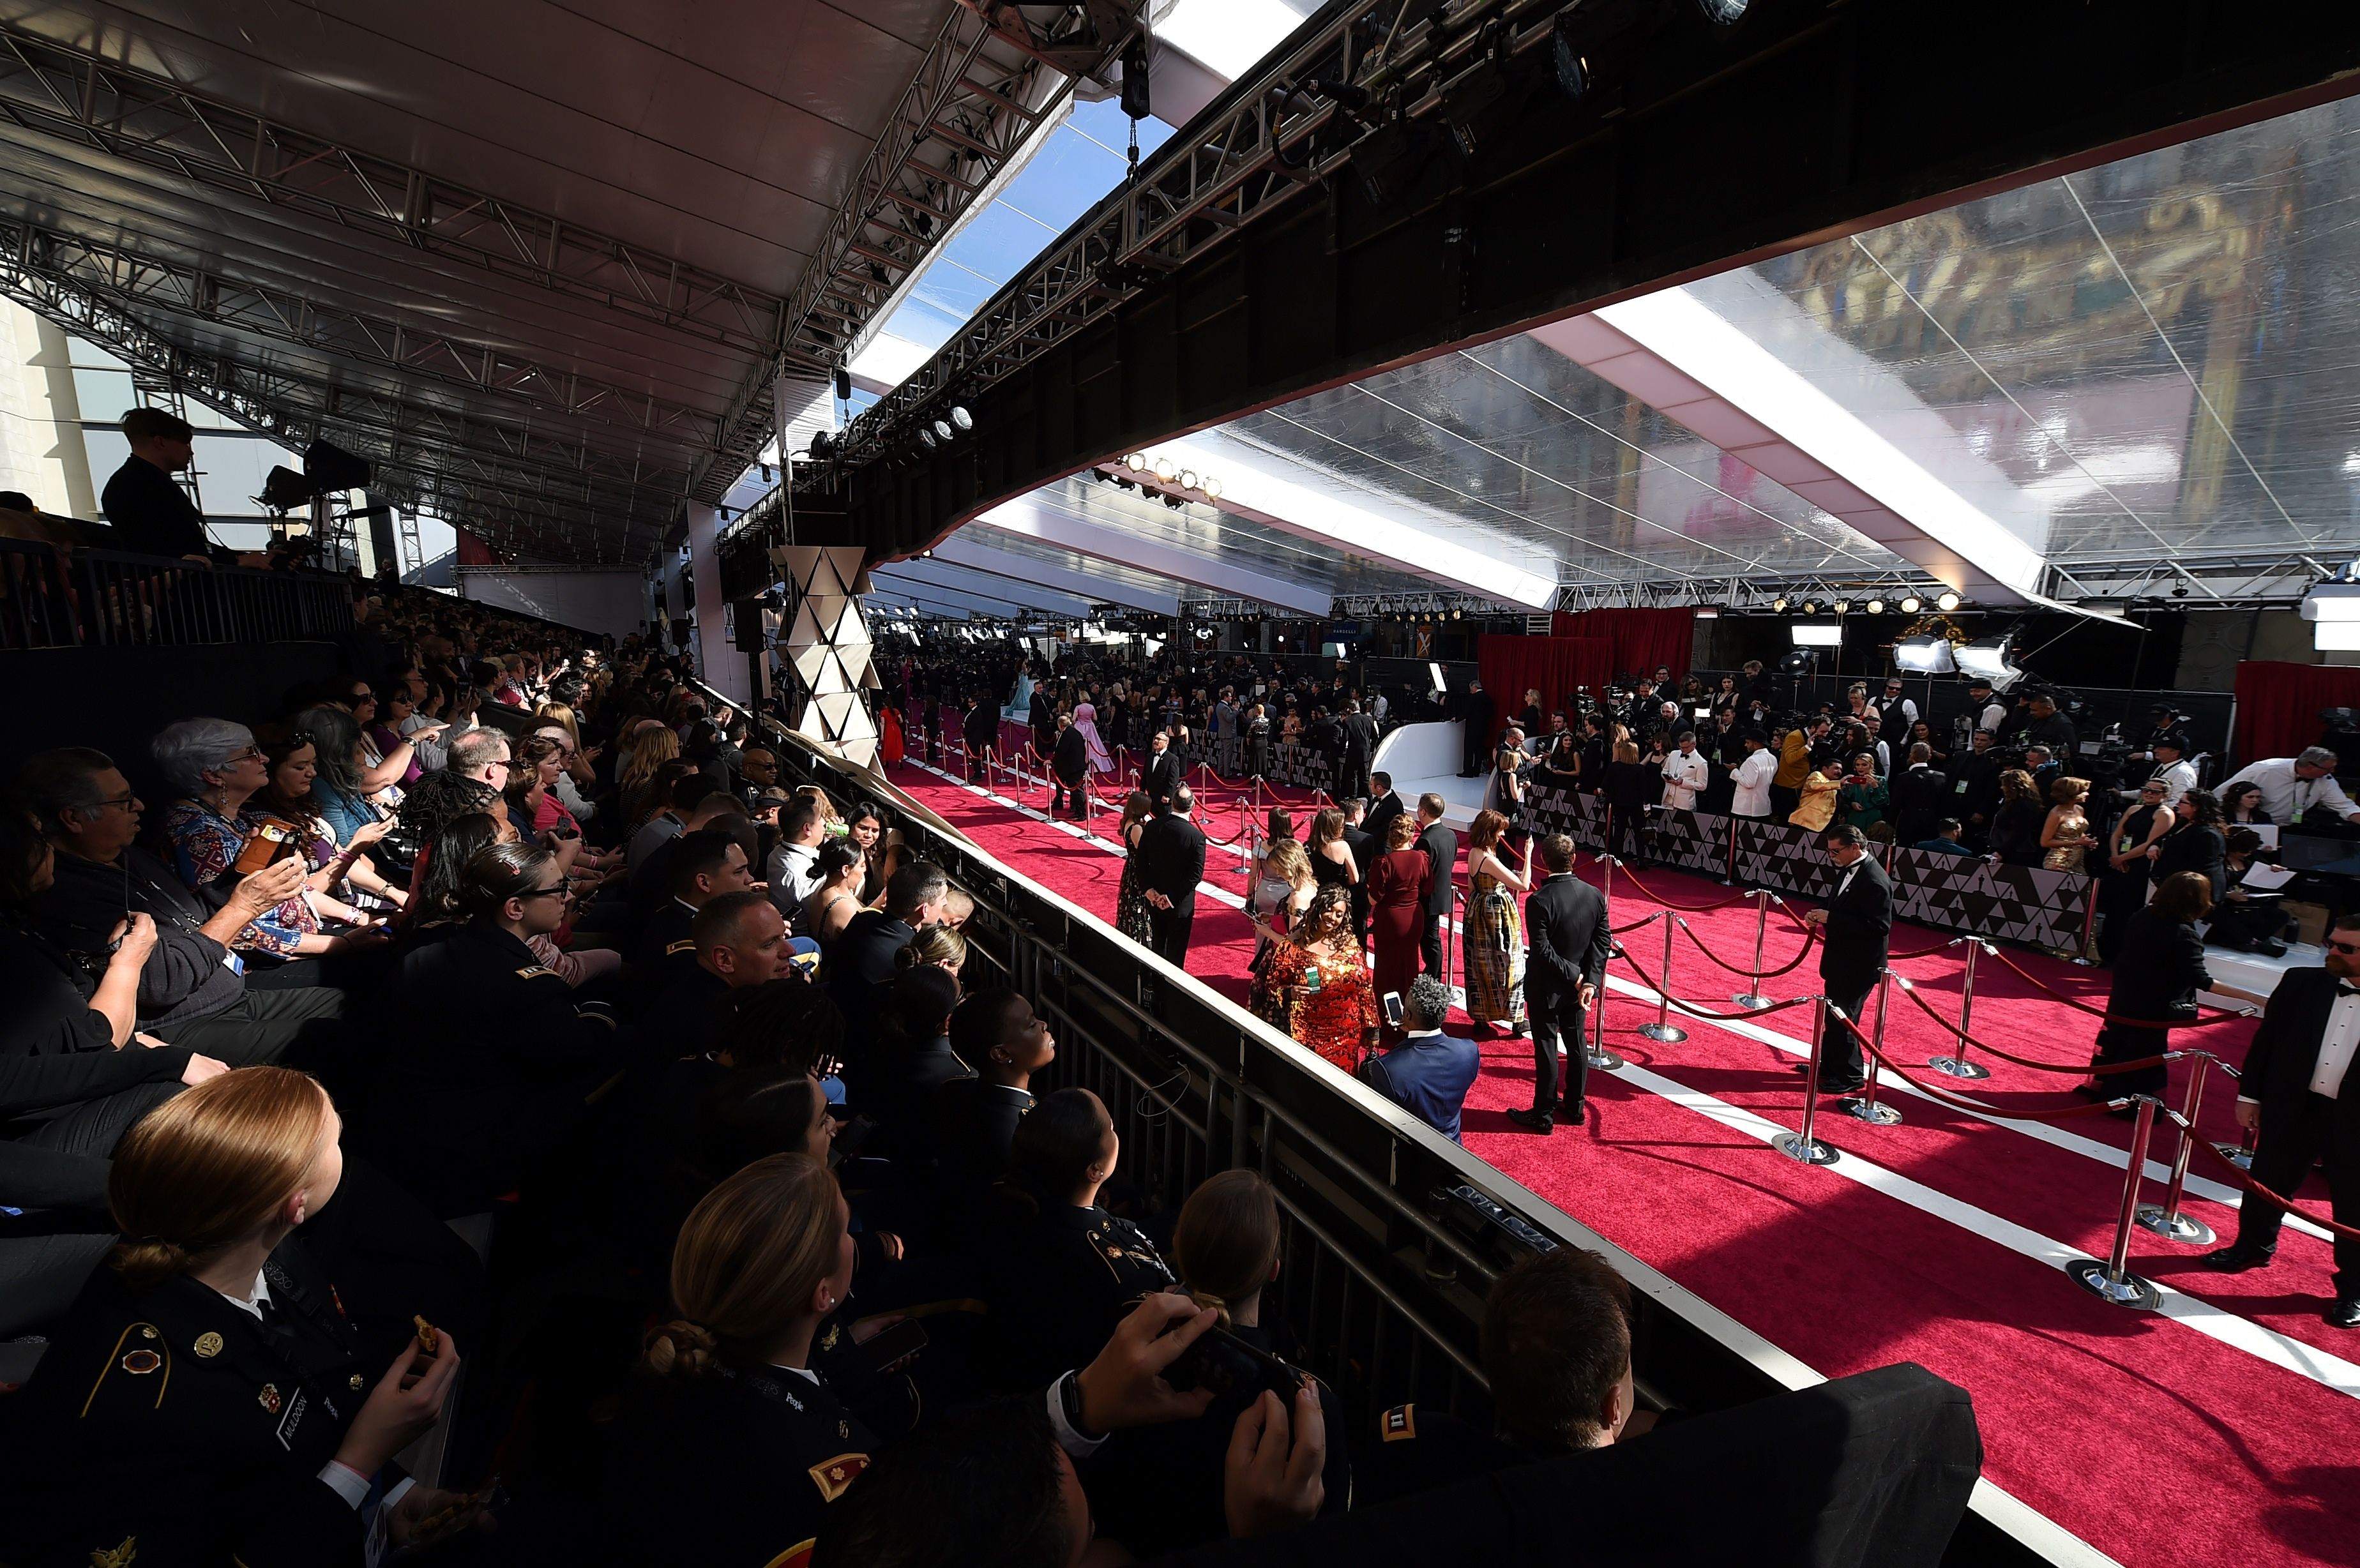 Vista general de la alfombra roja en el Teatro Dolby de Los Ángeles, donde se celebra la 91 edición de los premios Óscar. (Foto Prensa Libre: AFP)